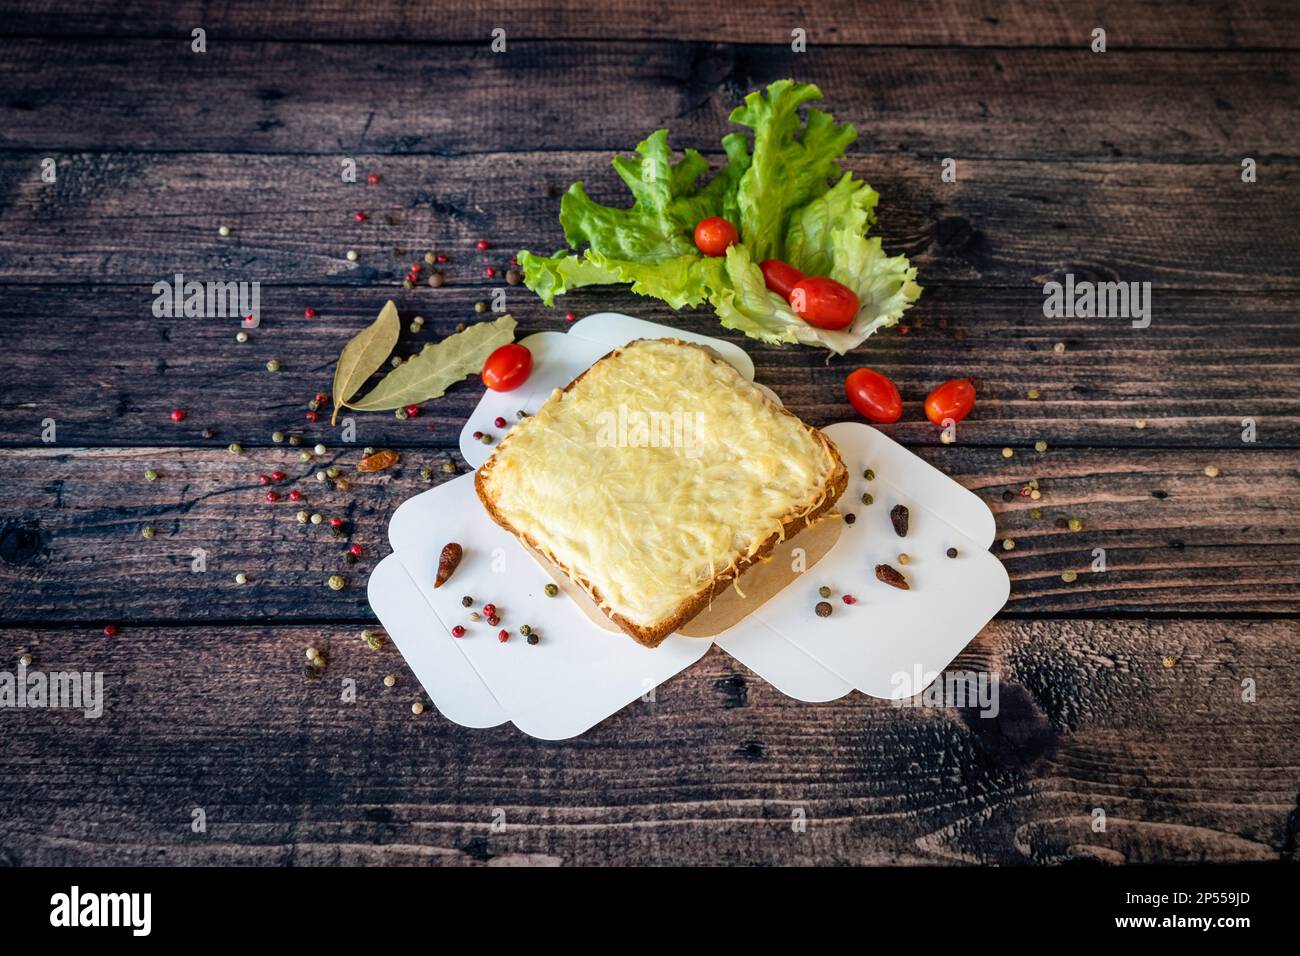 Gegrilltes Croque monsieur mit geschmolzenem Käse, serviert auf einem Holzboden Stockfoto